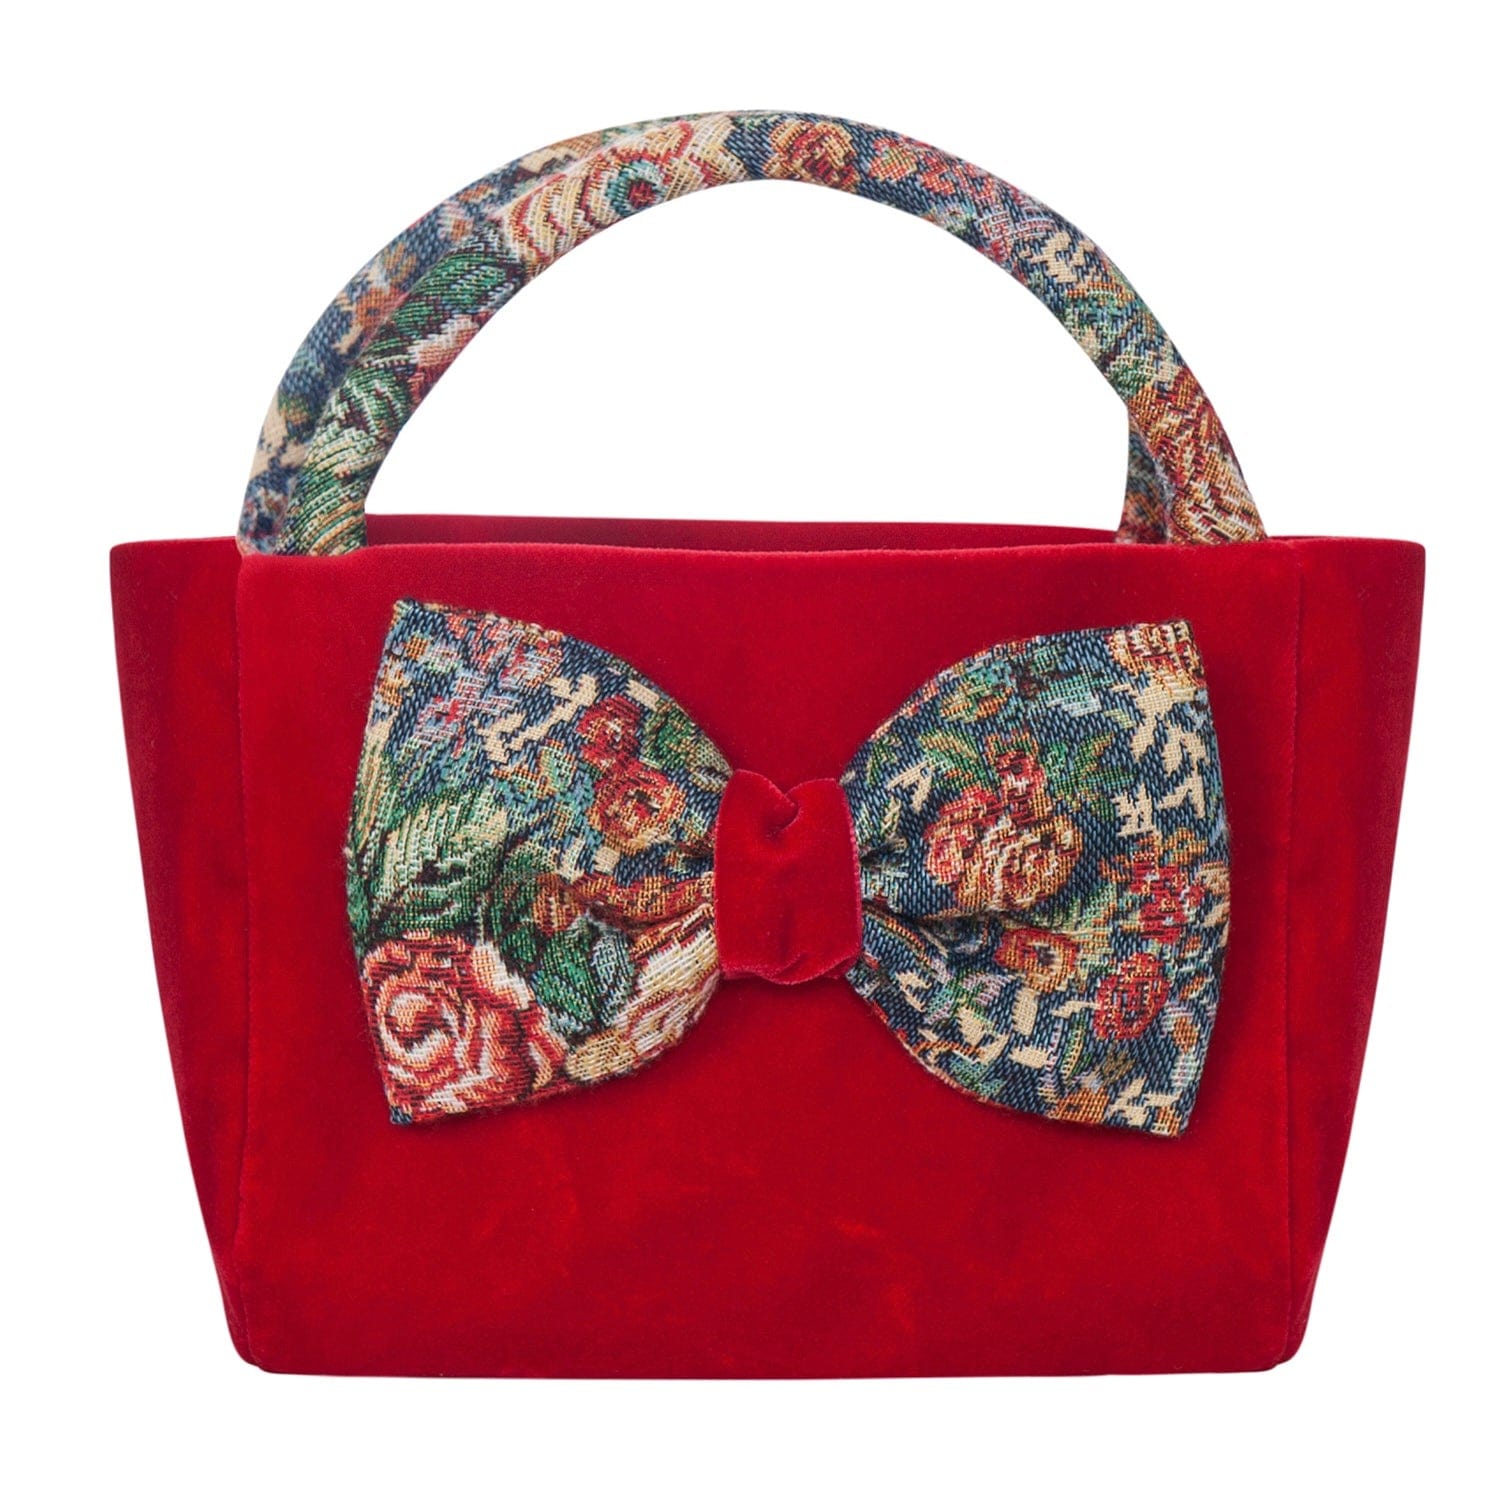 BALLOON CHIC - Tapestry Handbag - Red